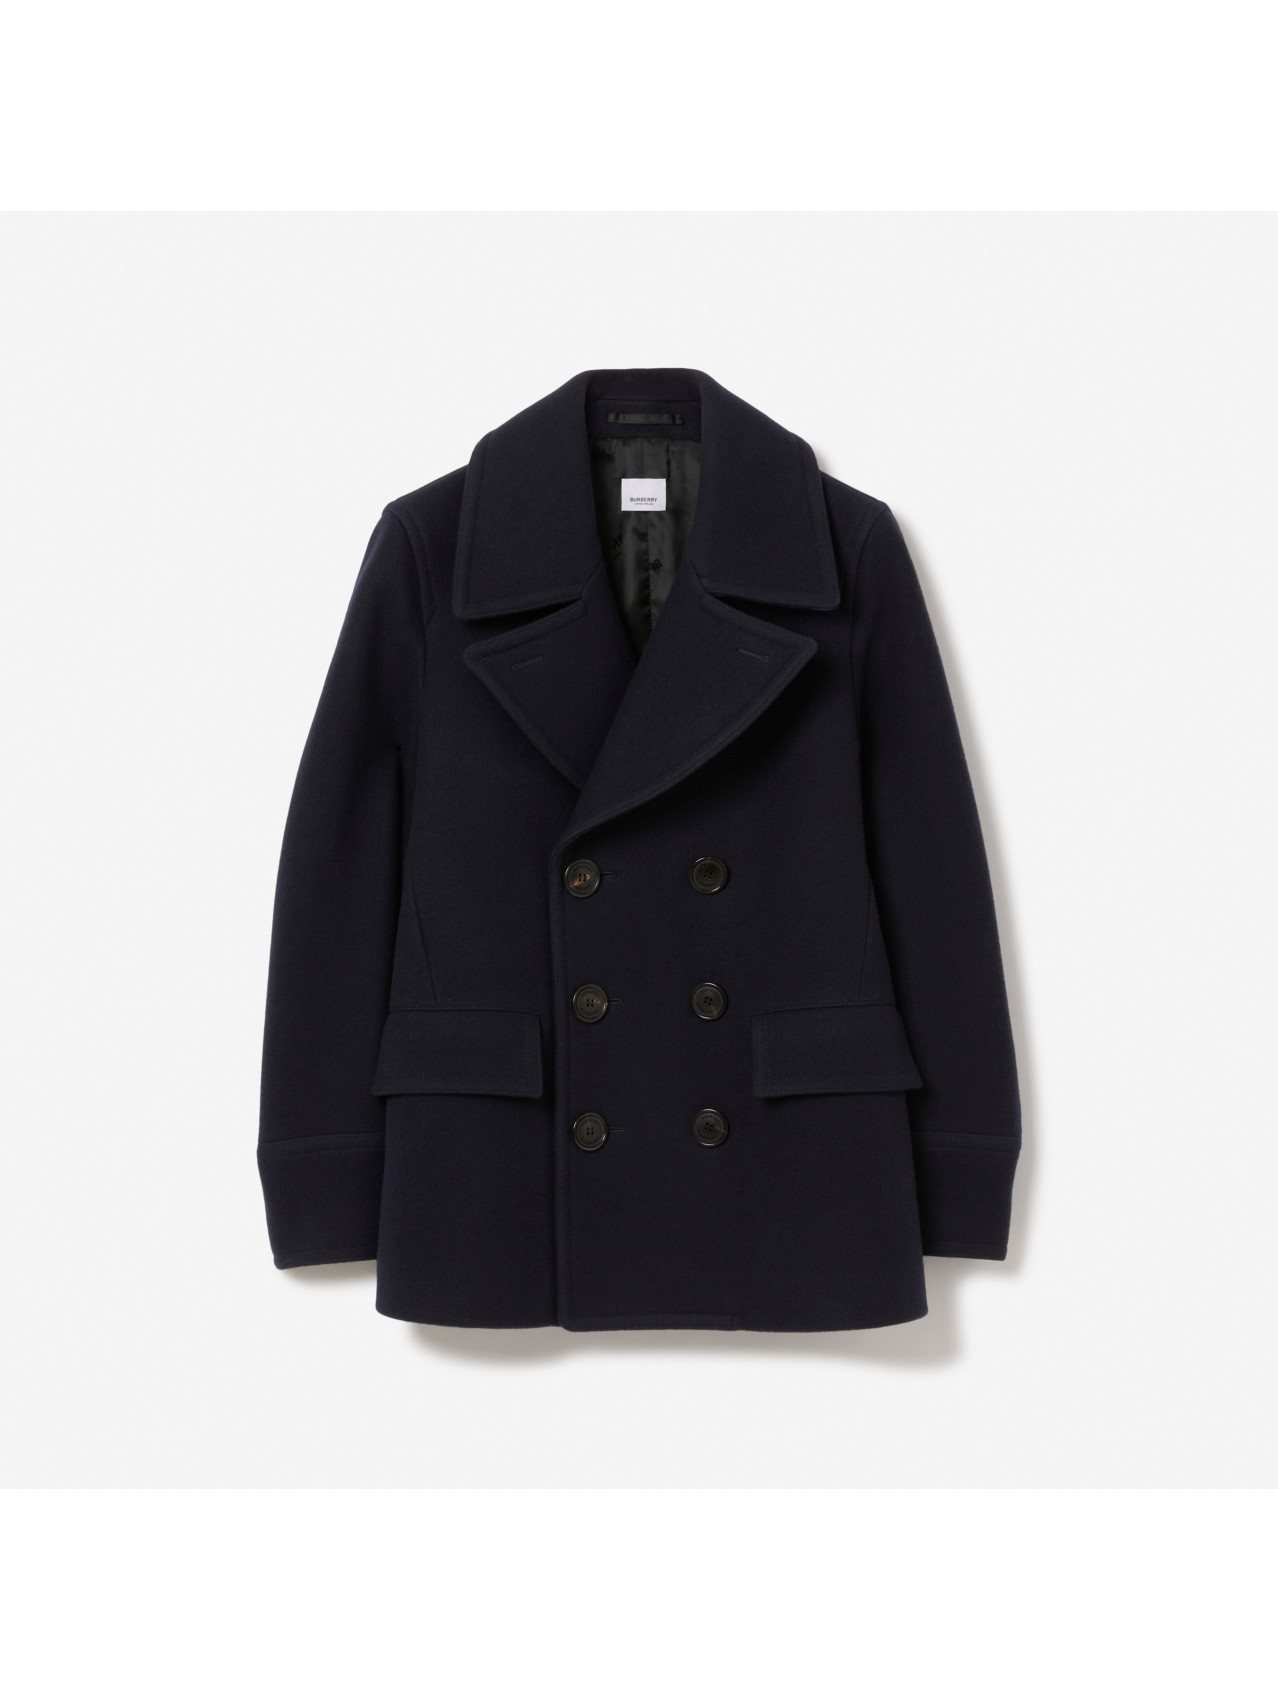 Men's Coats | Parkas, Duffle & Car Coats | Burberry® Official